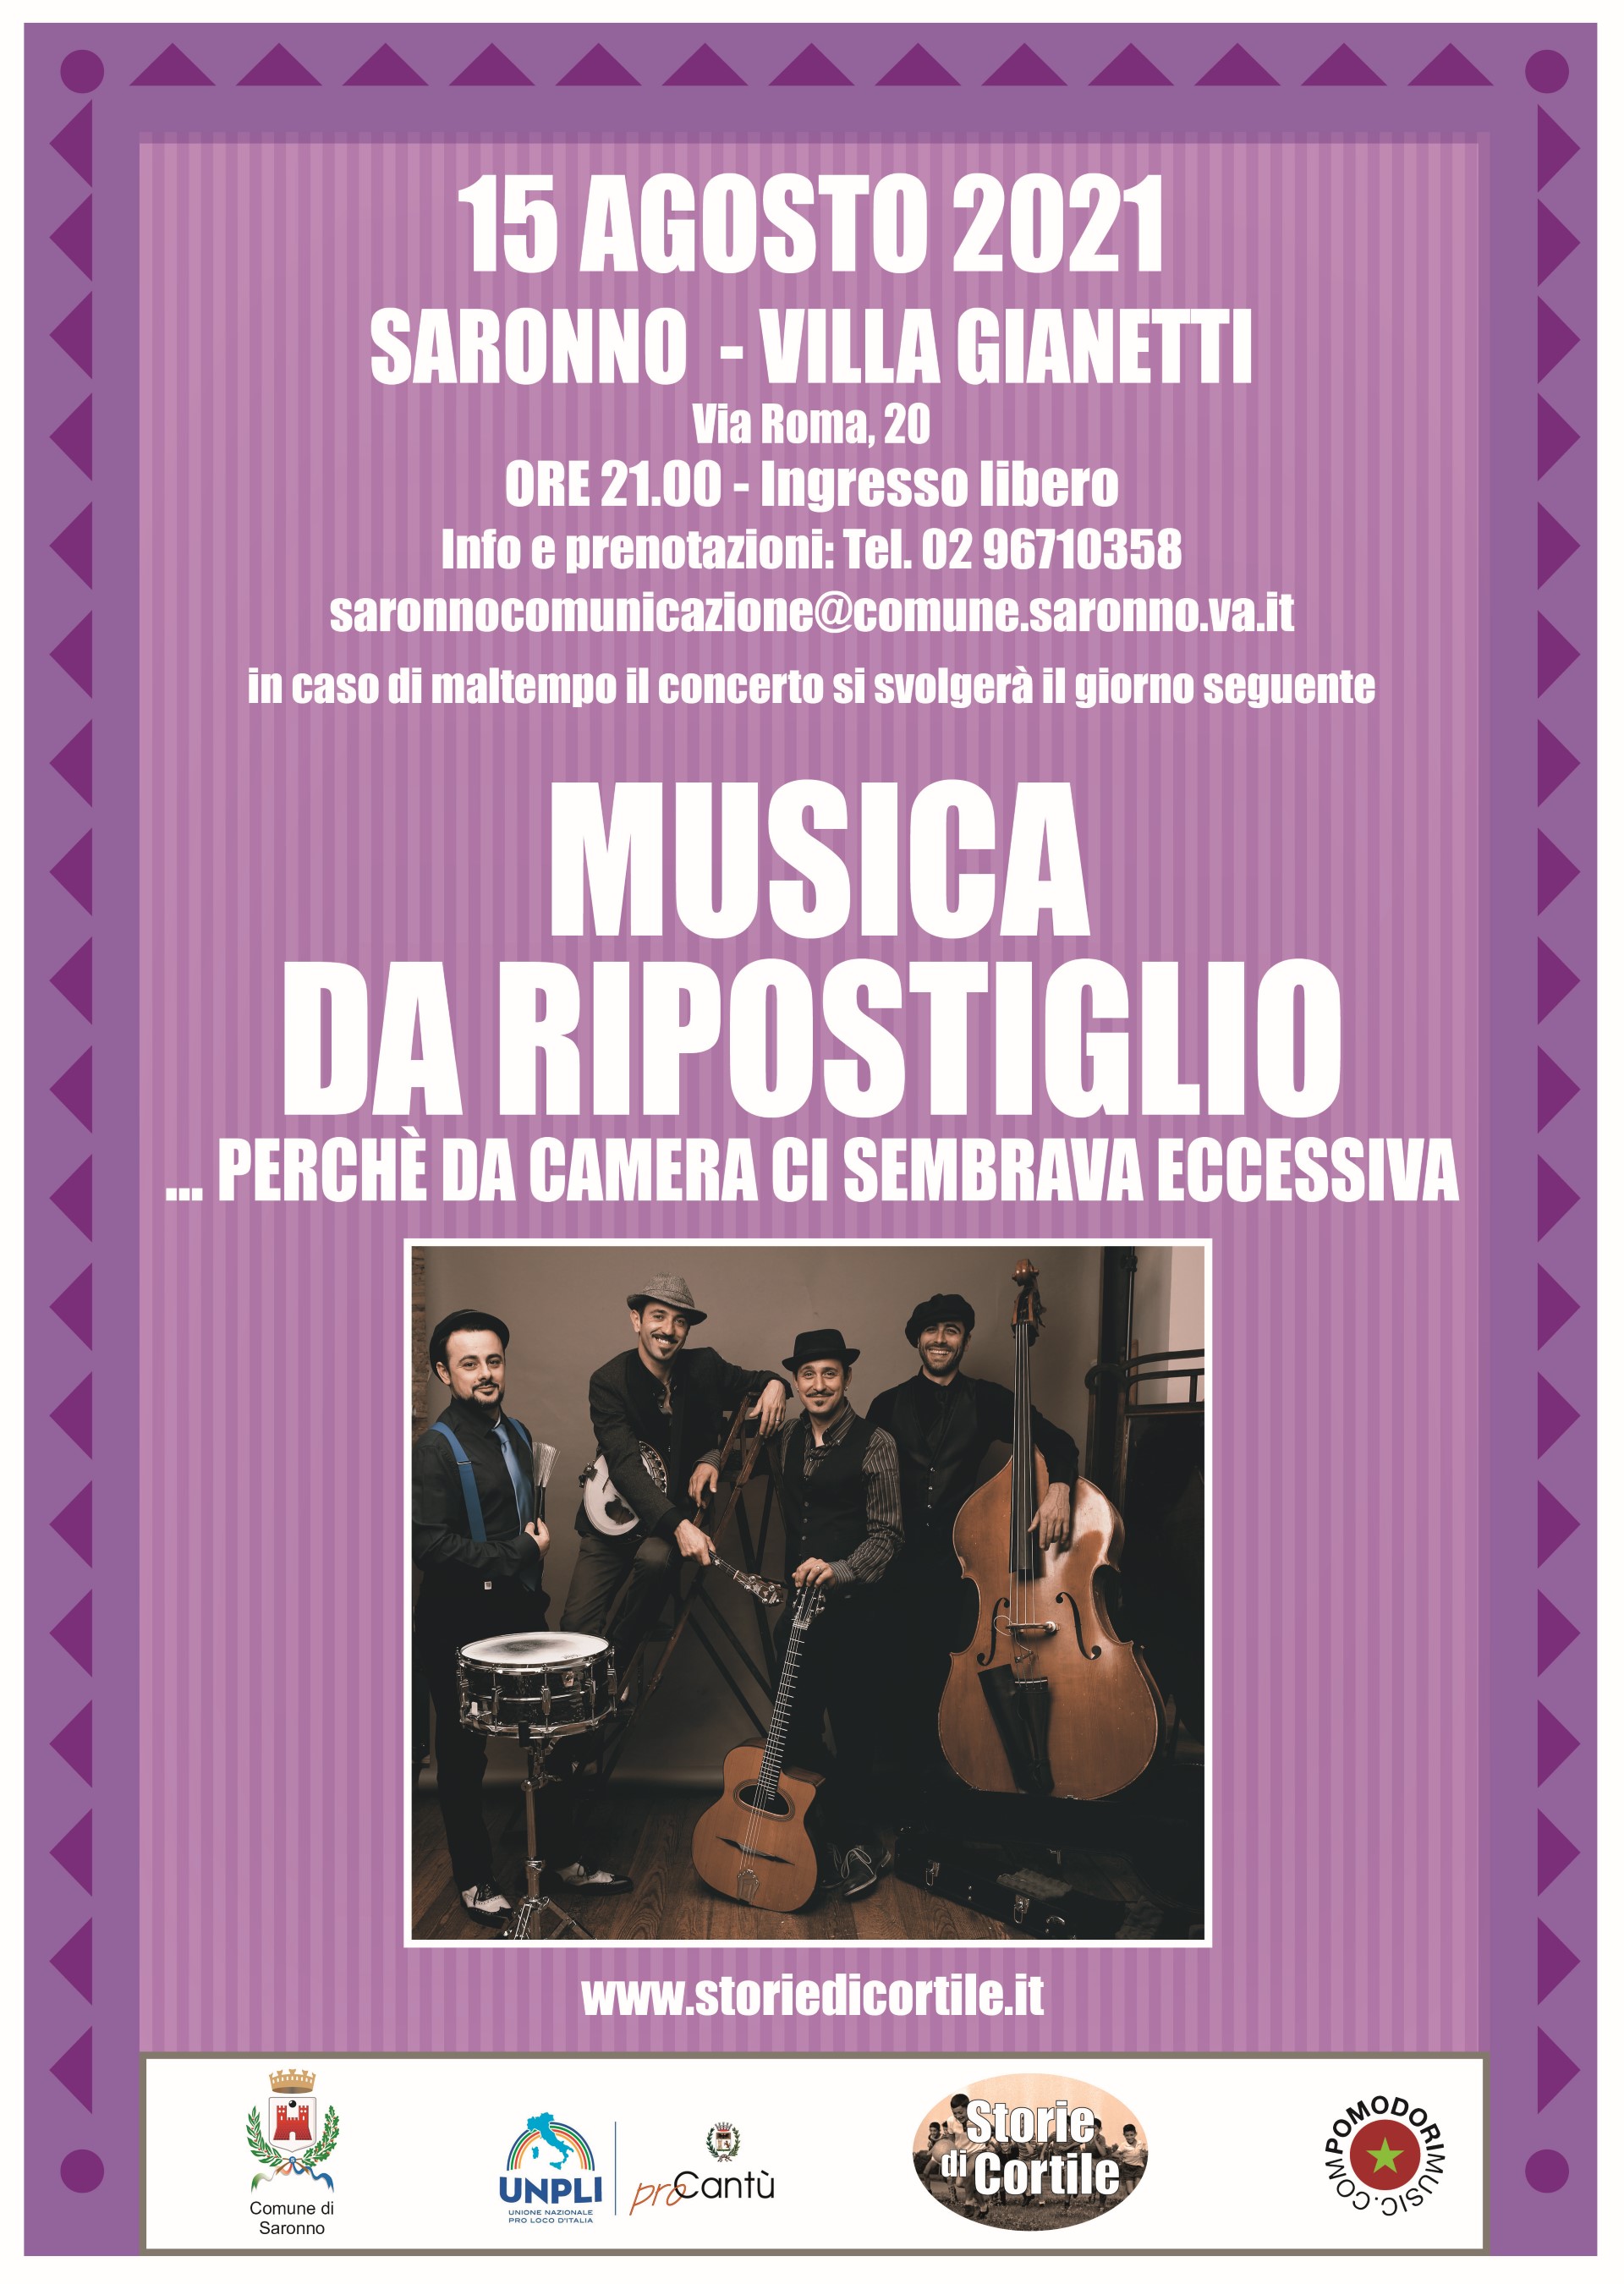 15/08/2021 - Saronno - Musica da ripostiglio